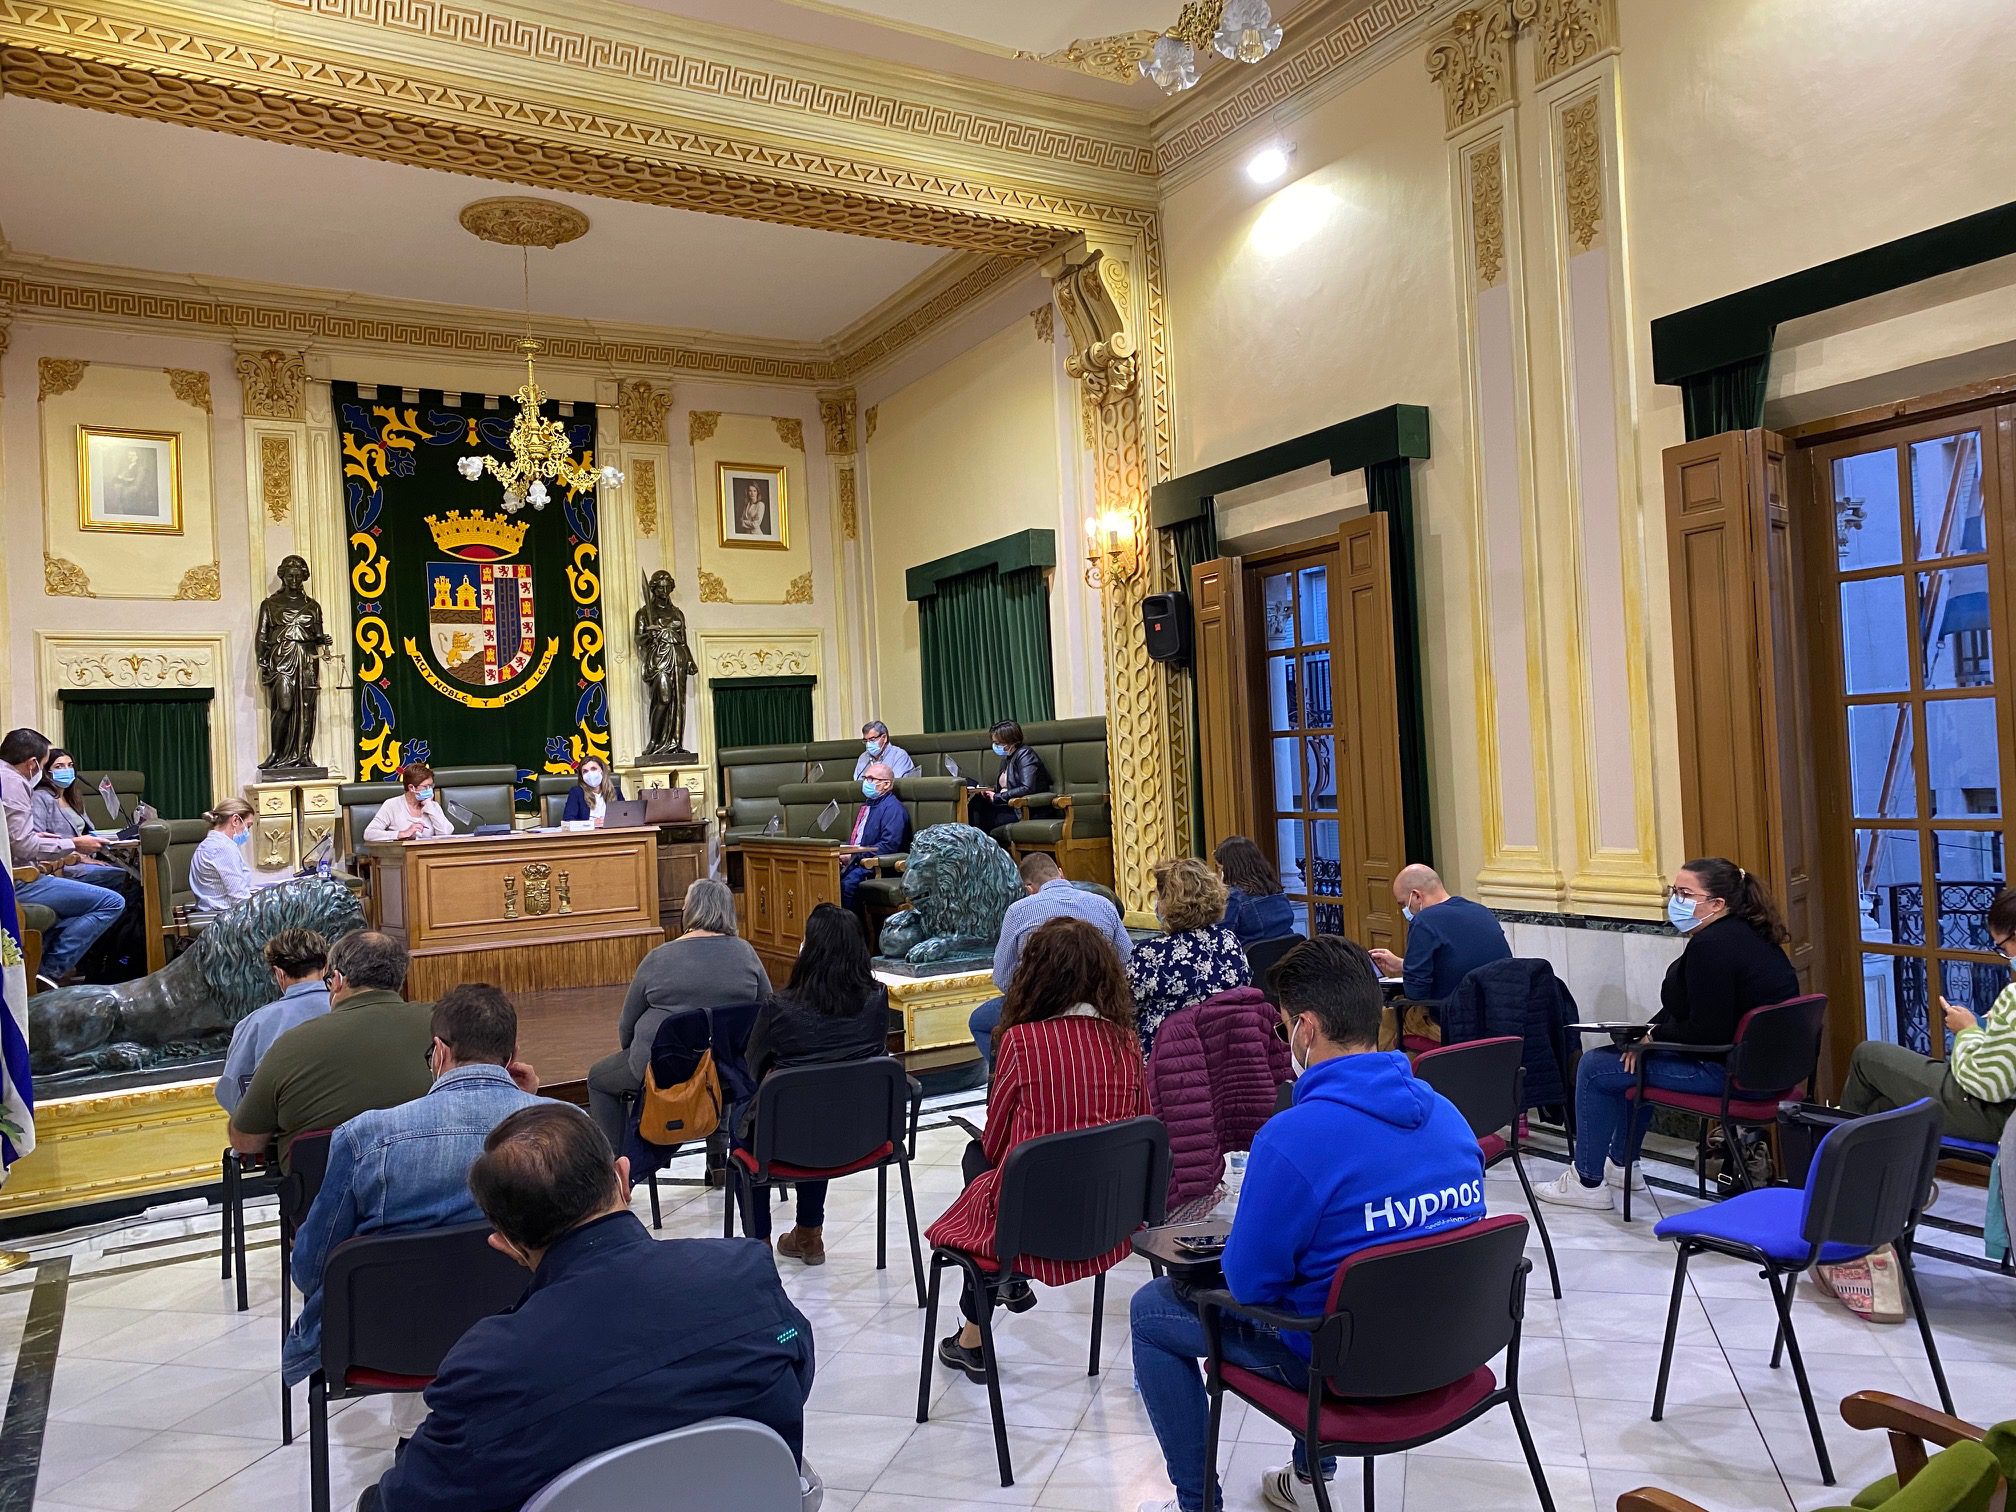 El pleno acuerda por unanimidad otorgar 25.000 euros para restaurar el órgano de Santiago